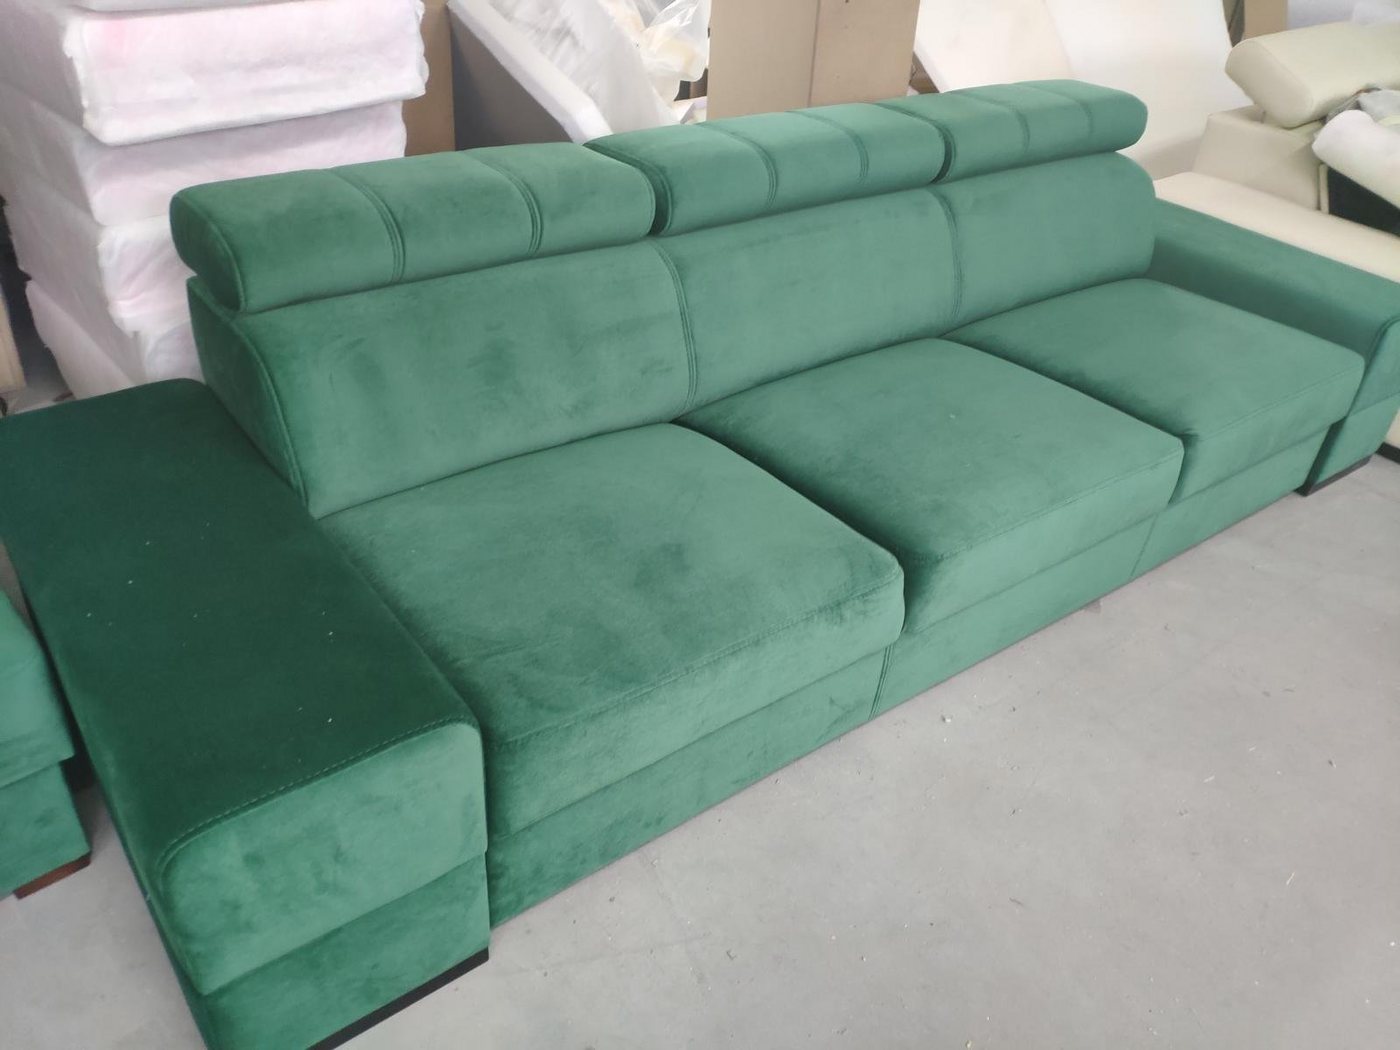 JVmoebel Sofa Design xxl Couchen Sofa 4 - Sitzer Couch Leder Polster, Made in Europe von JVmoebel